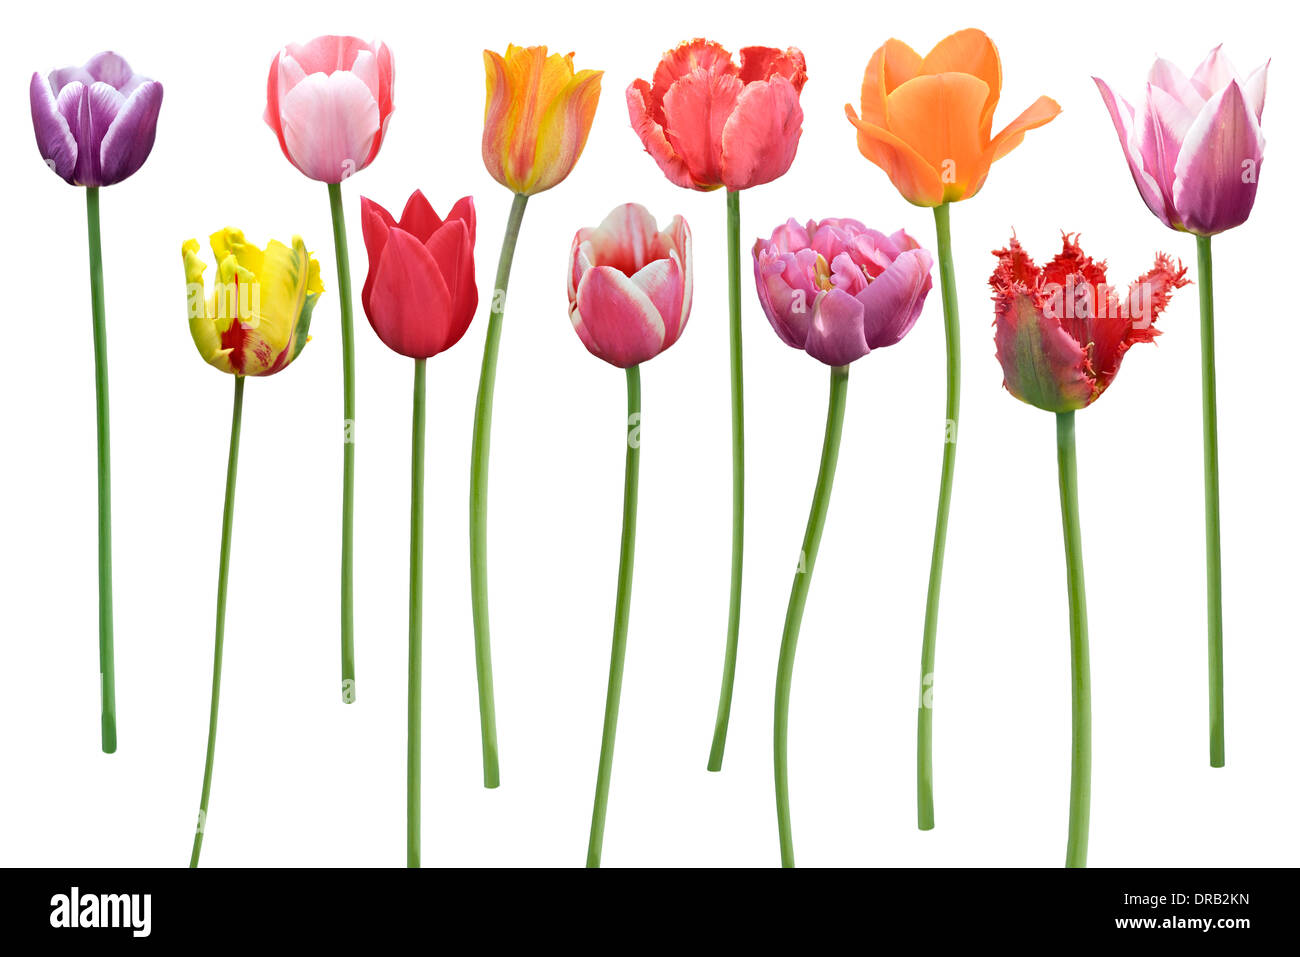 Bunte Tulpen Blumen In einer Reihe, Isolated On White Background Stockfoto